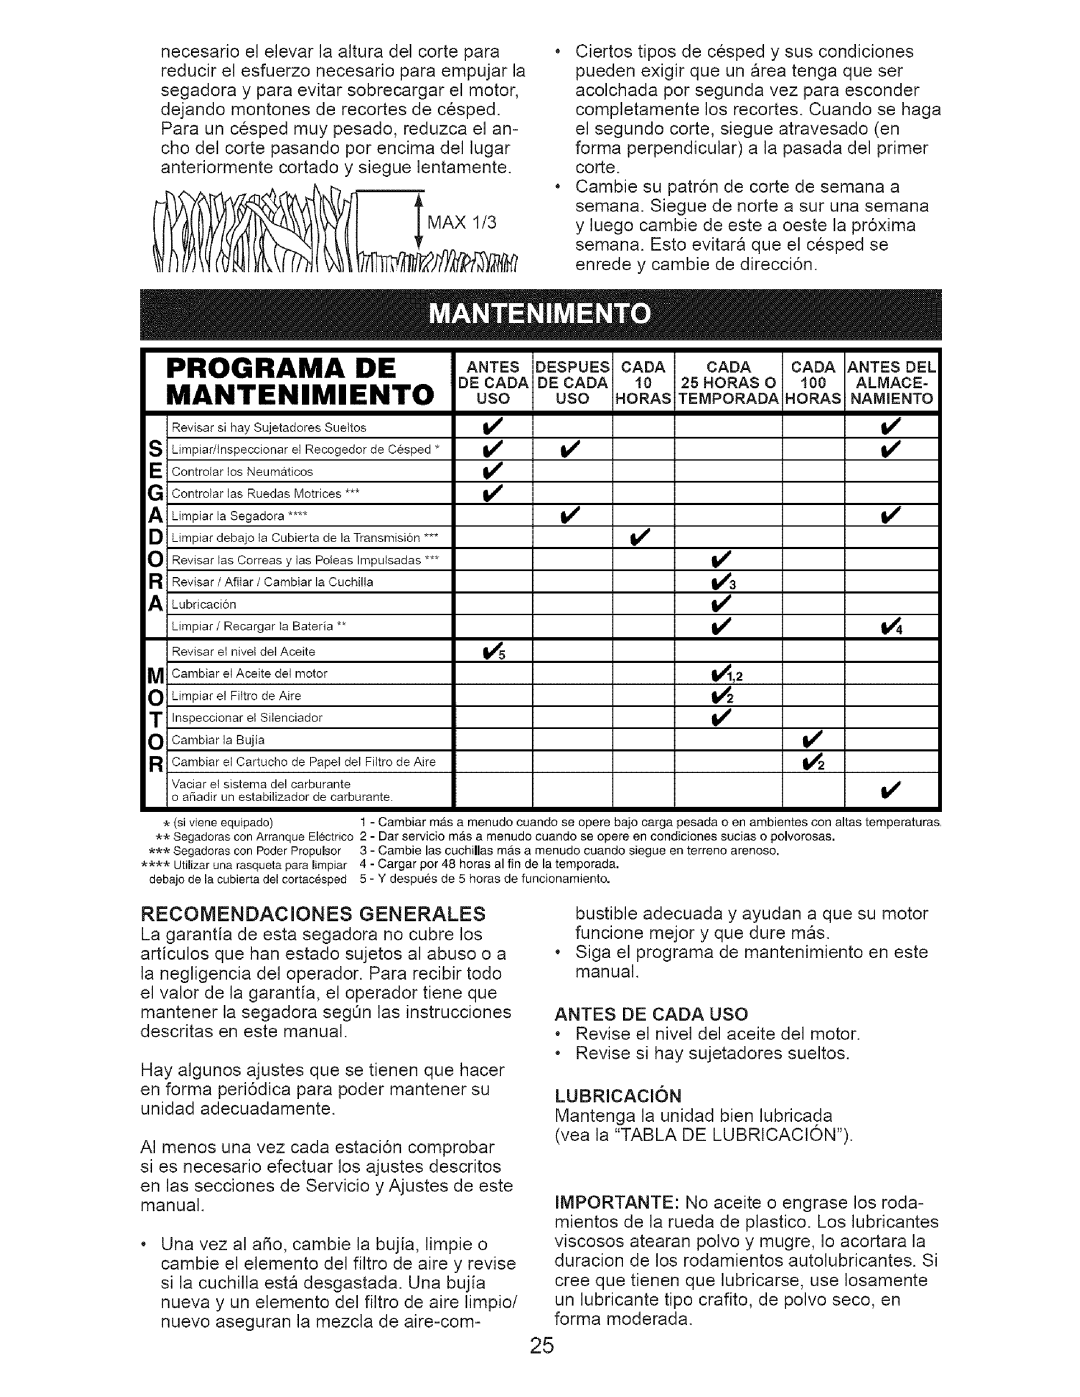 Craftsman 917.385142 owner manual Programa De Mantenimiento, ANrEsDESPUESCADA CADA CADA.rEsDEL 